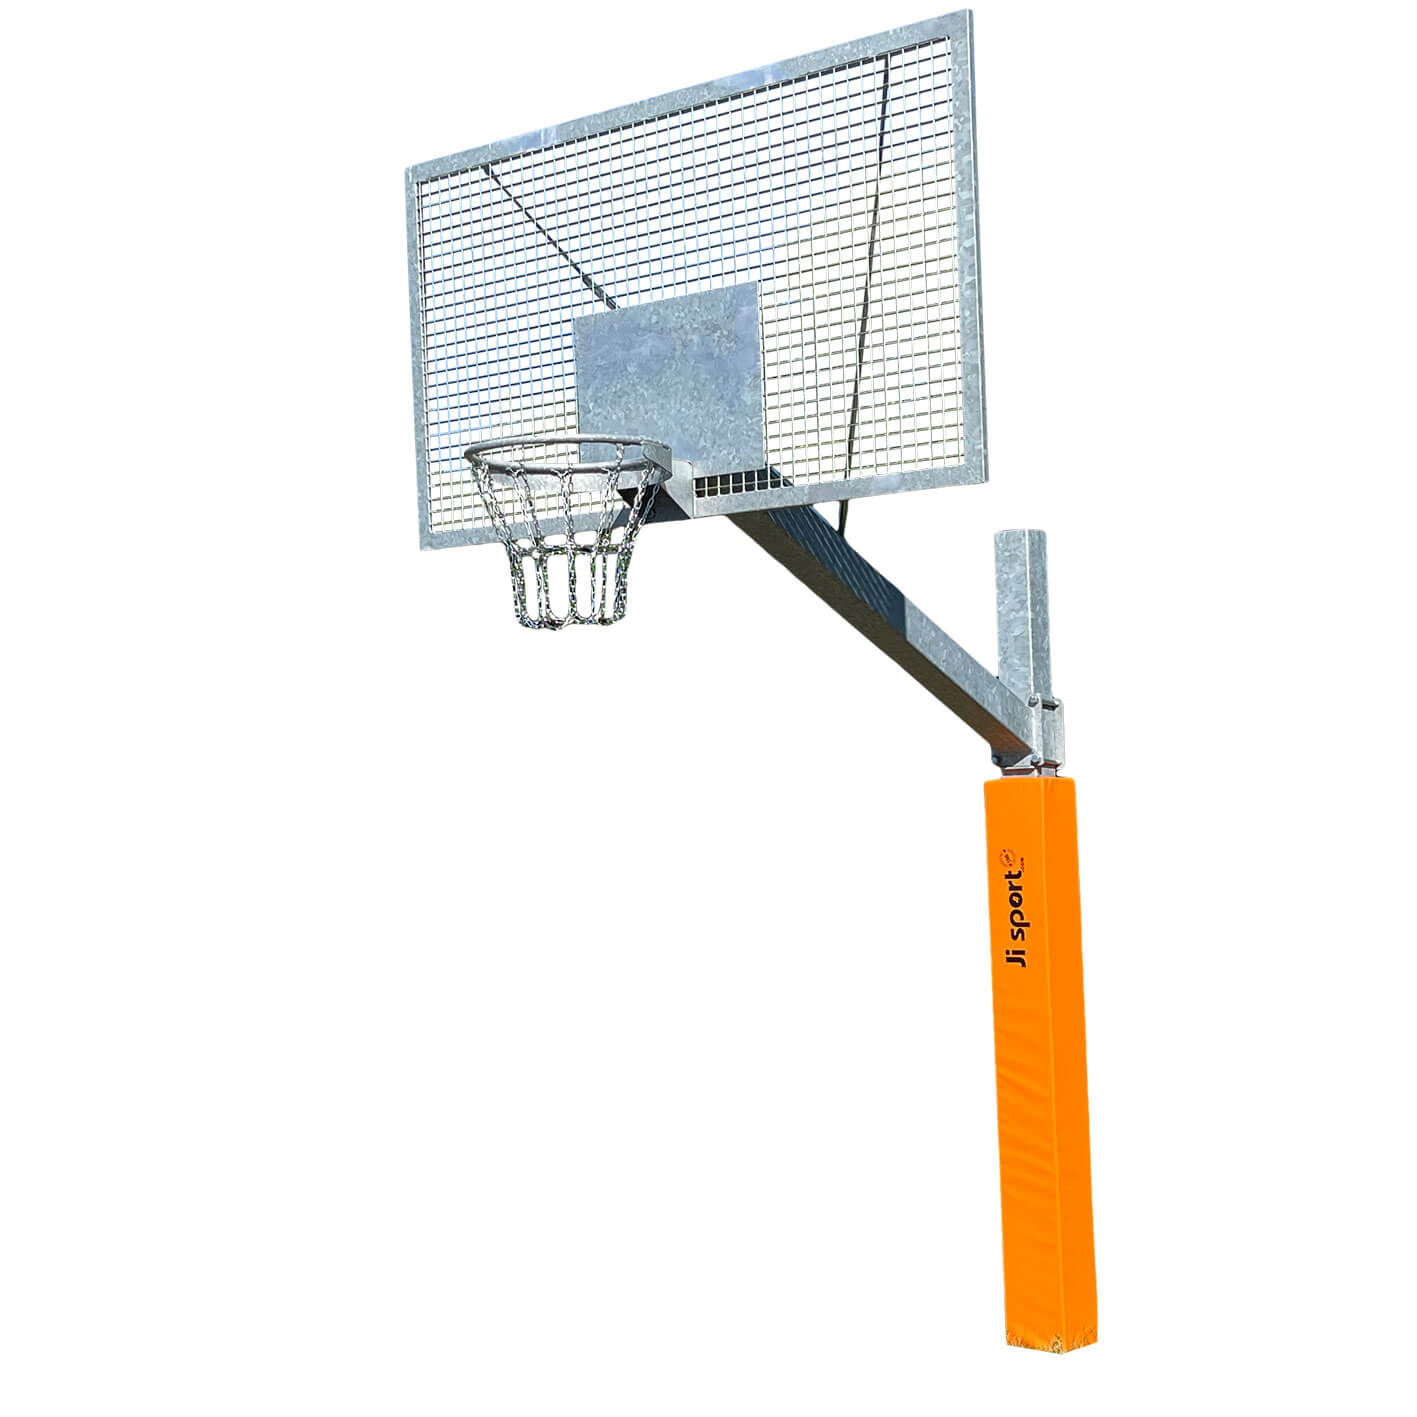 Basketball - Robust Safe